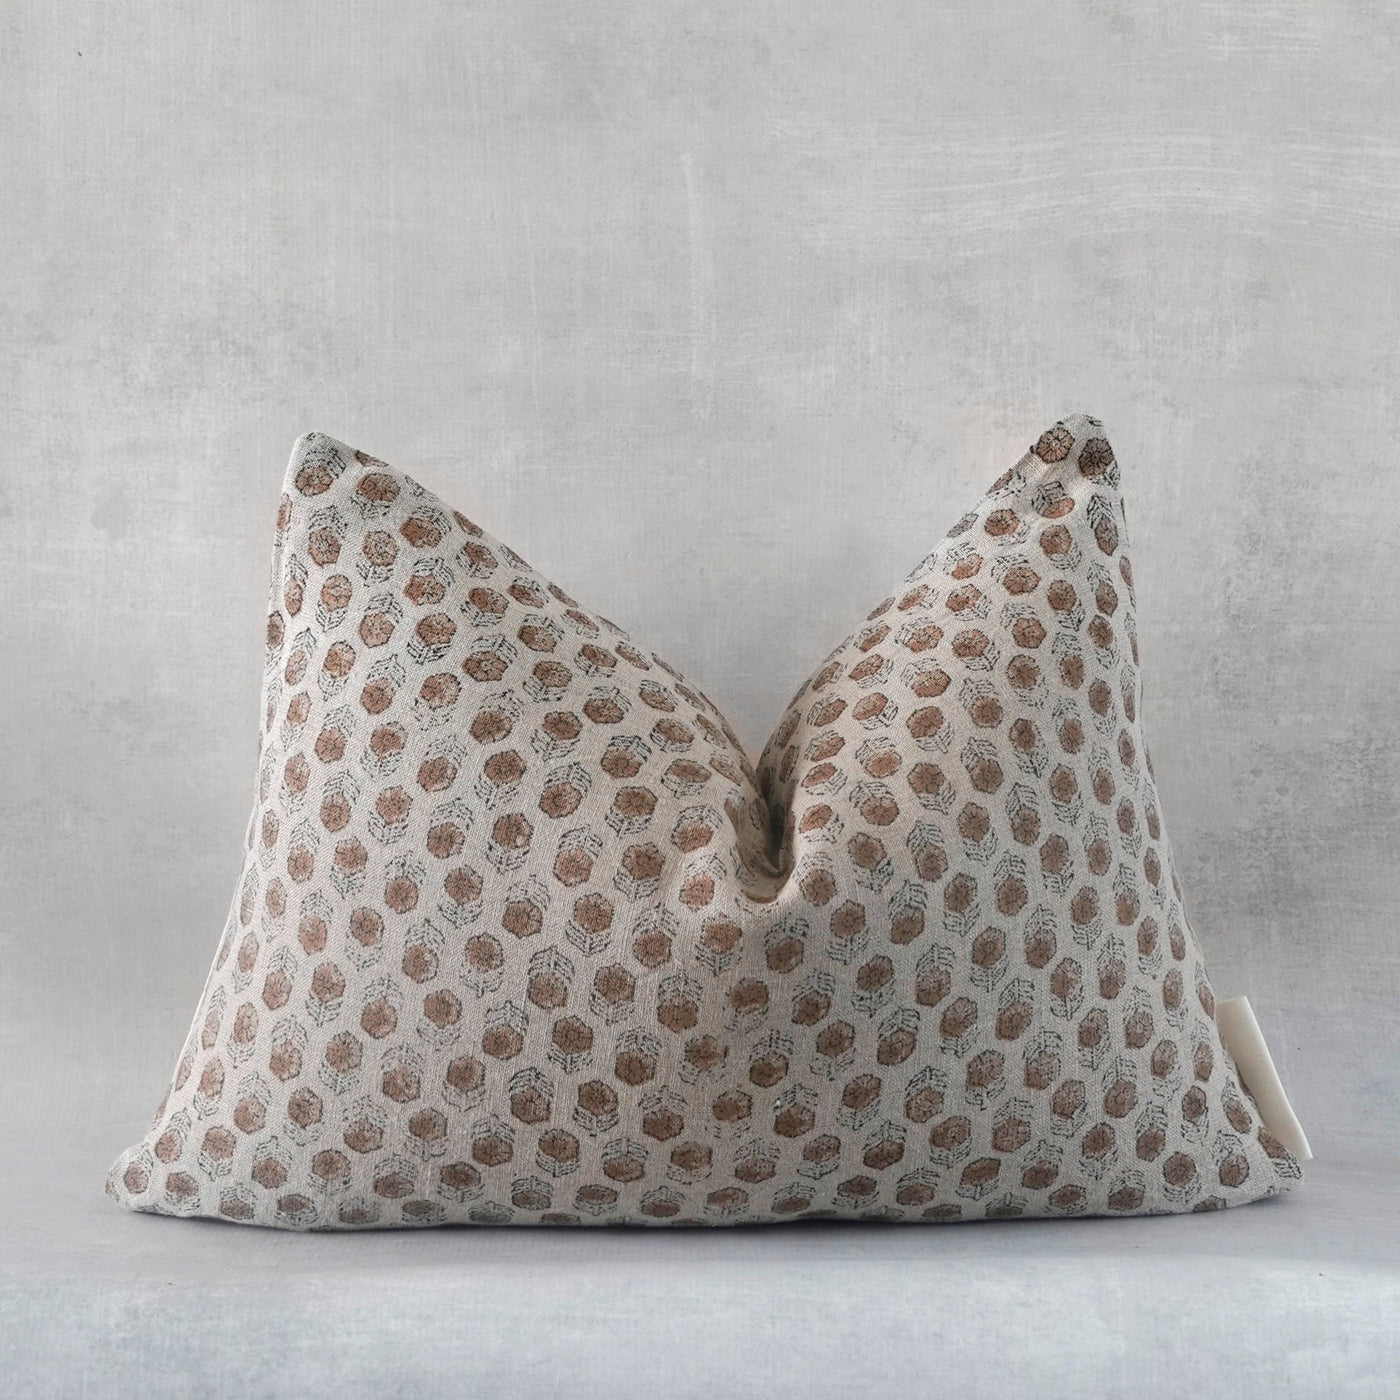 NENE-Indian Hand Block Linen Lumbar Pillow cover - Sweet Water Decor - Pillow Cover